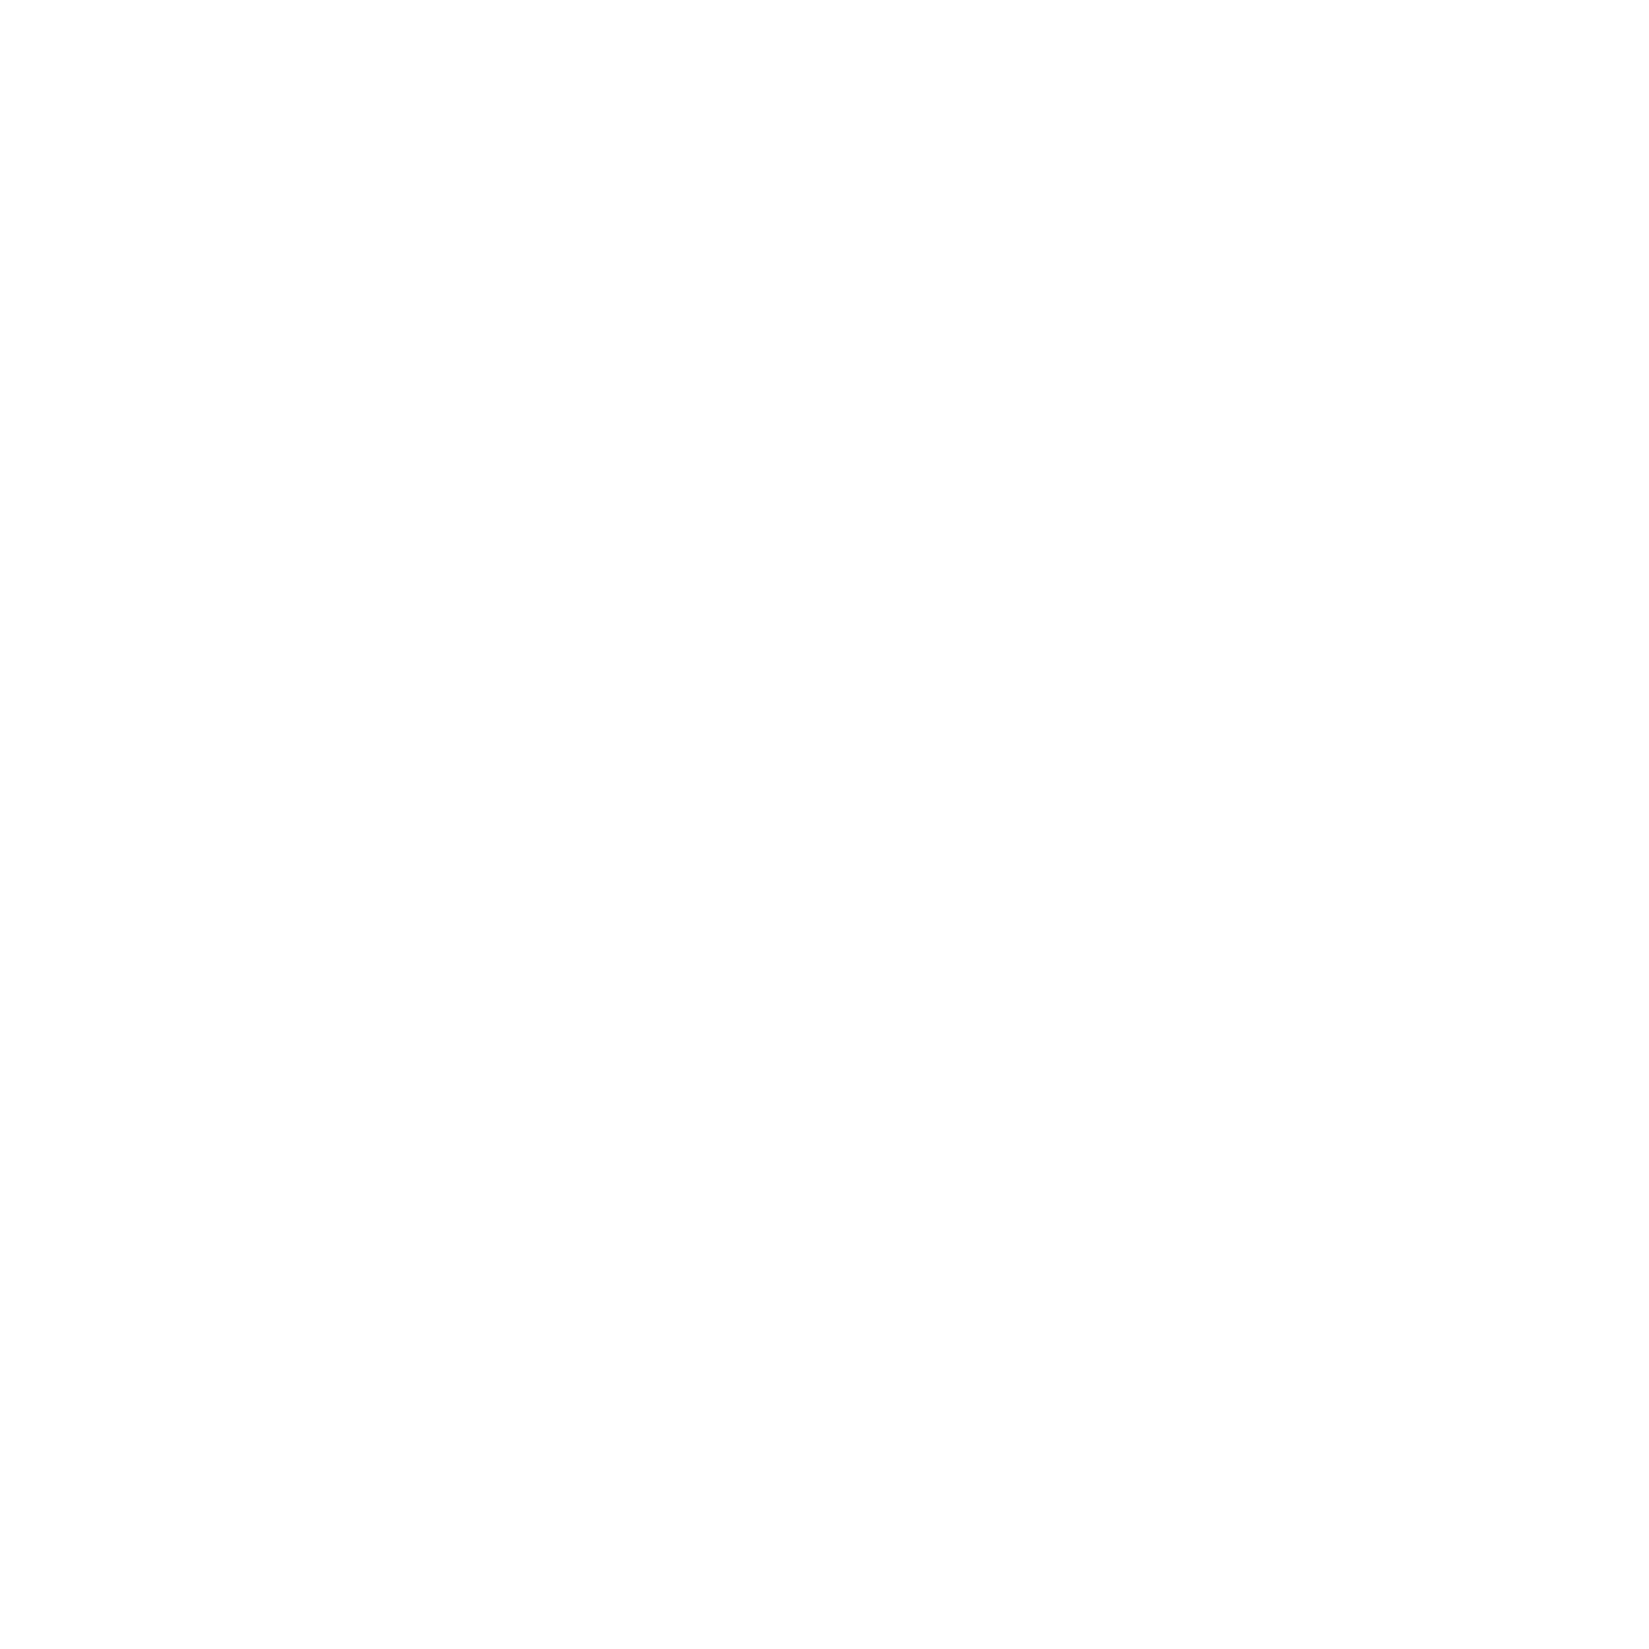 NPR Logo - WWNO. Your source for NPR News, Music & Culture